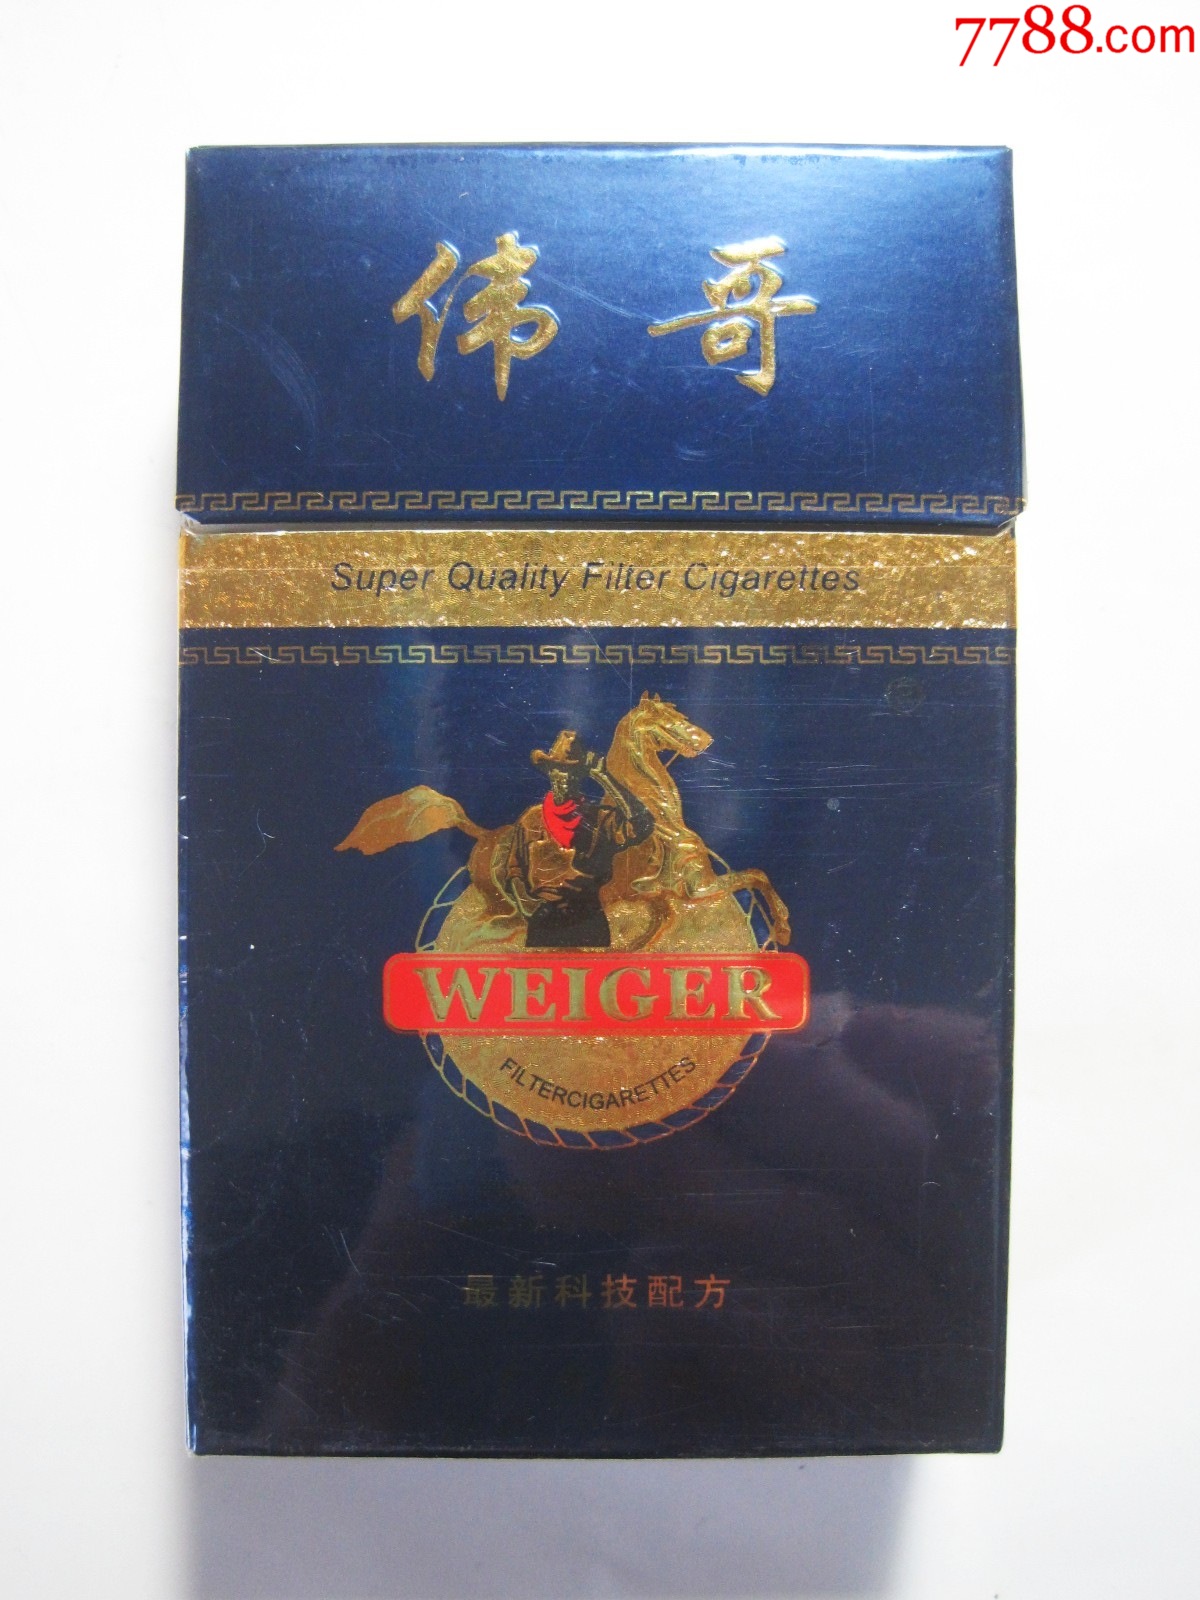 【伟哥】湖北广水卷烟厂3d标(空烟盒)!伟哥特制香烟,最新科技配方!